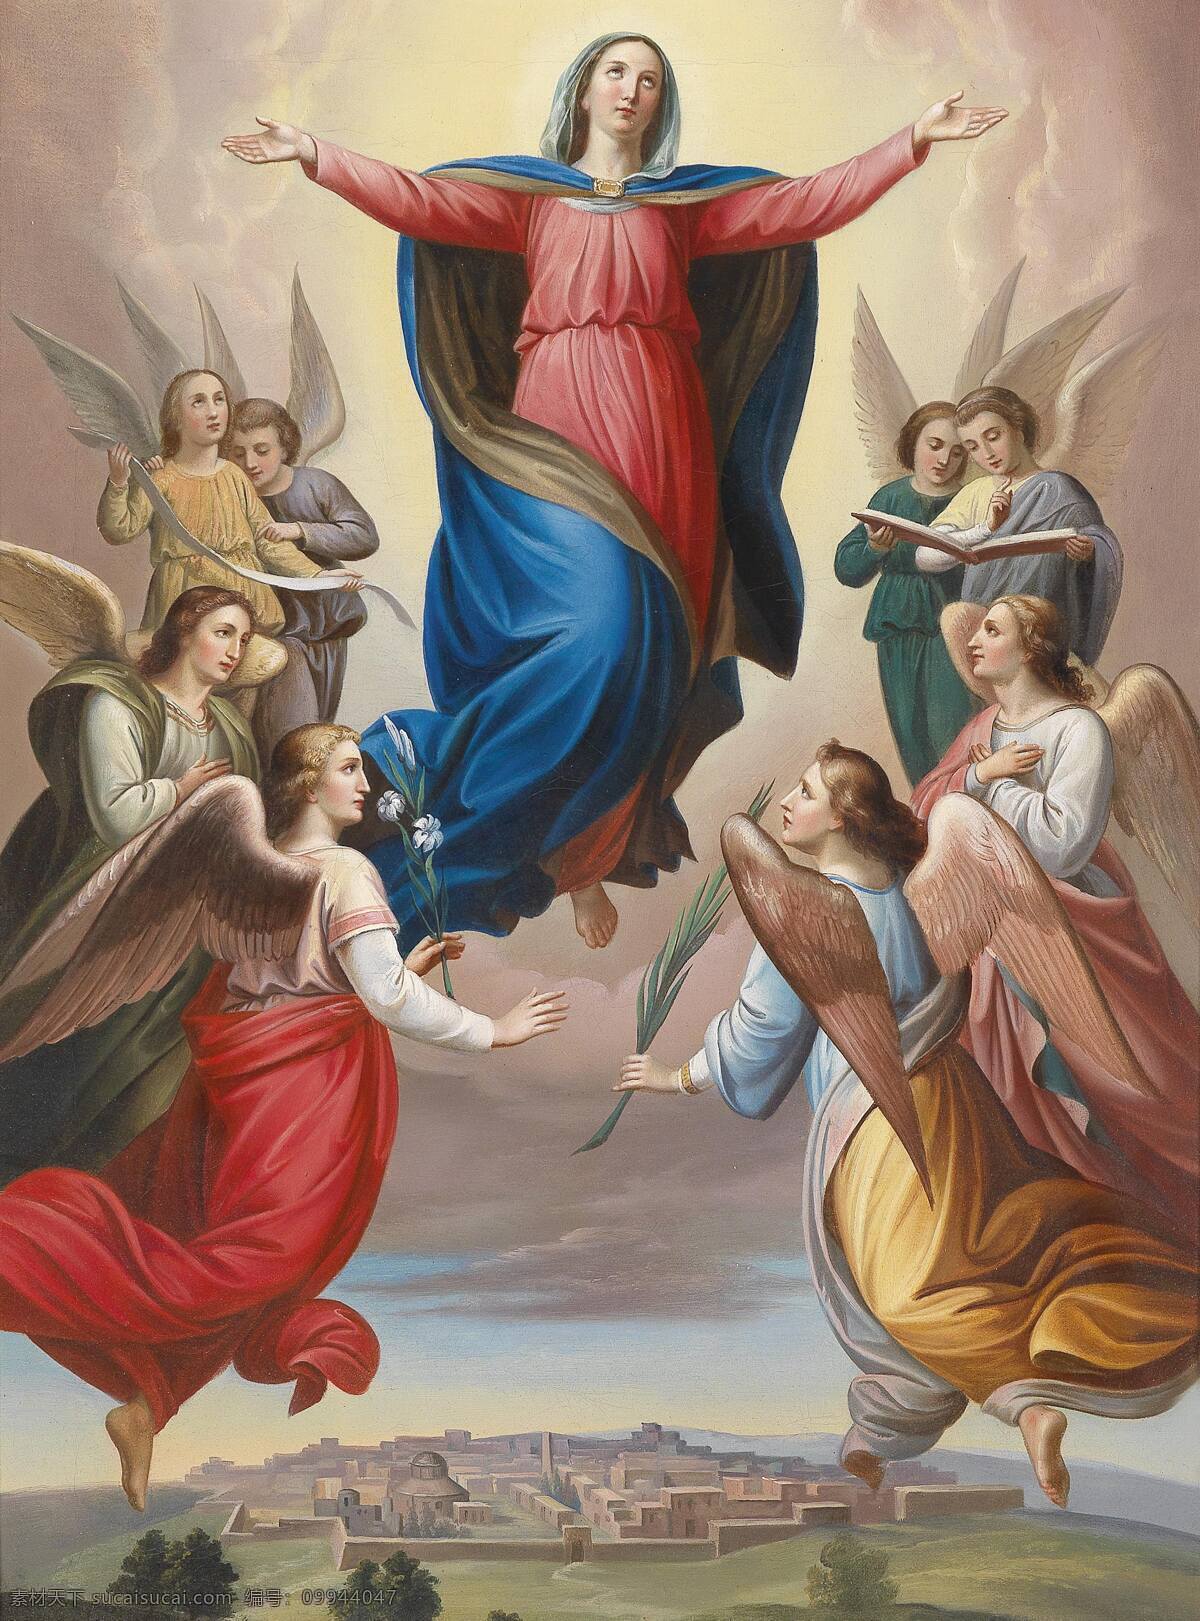 圣母玛丽娅 天使 圣母 围绕 祈祷 女人 山庄 油画 绘画书法 文化艺术